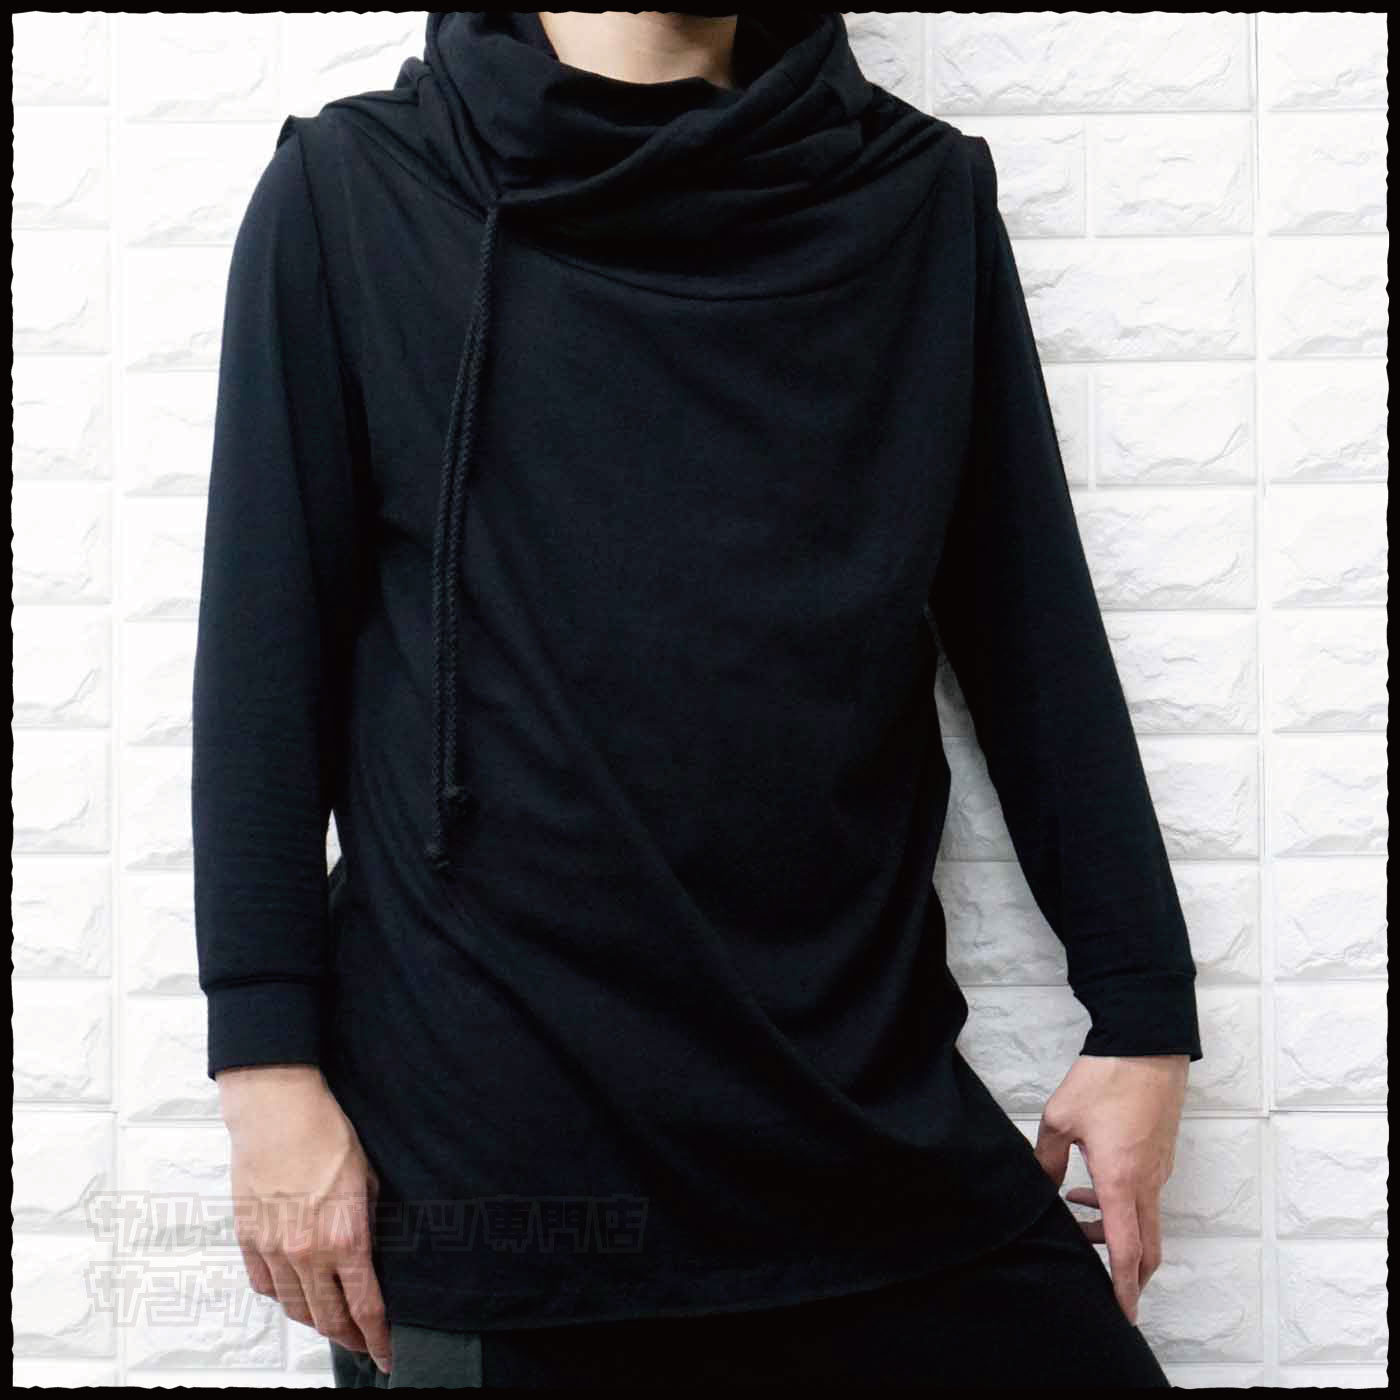 ベスト タンクトップ ノースリーブ Tシャツ メンズ レディース モード系 V系 サロン系 黒 変形アウター 半袖 韓国 ストリート ファッション